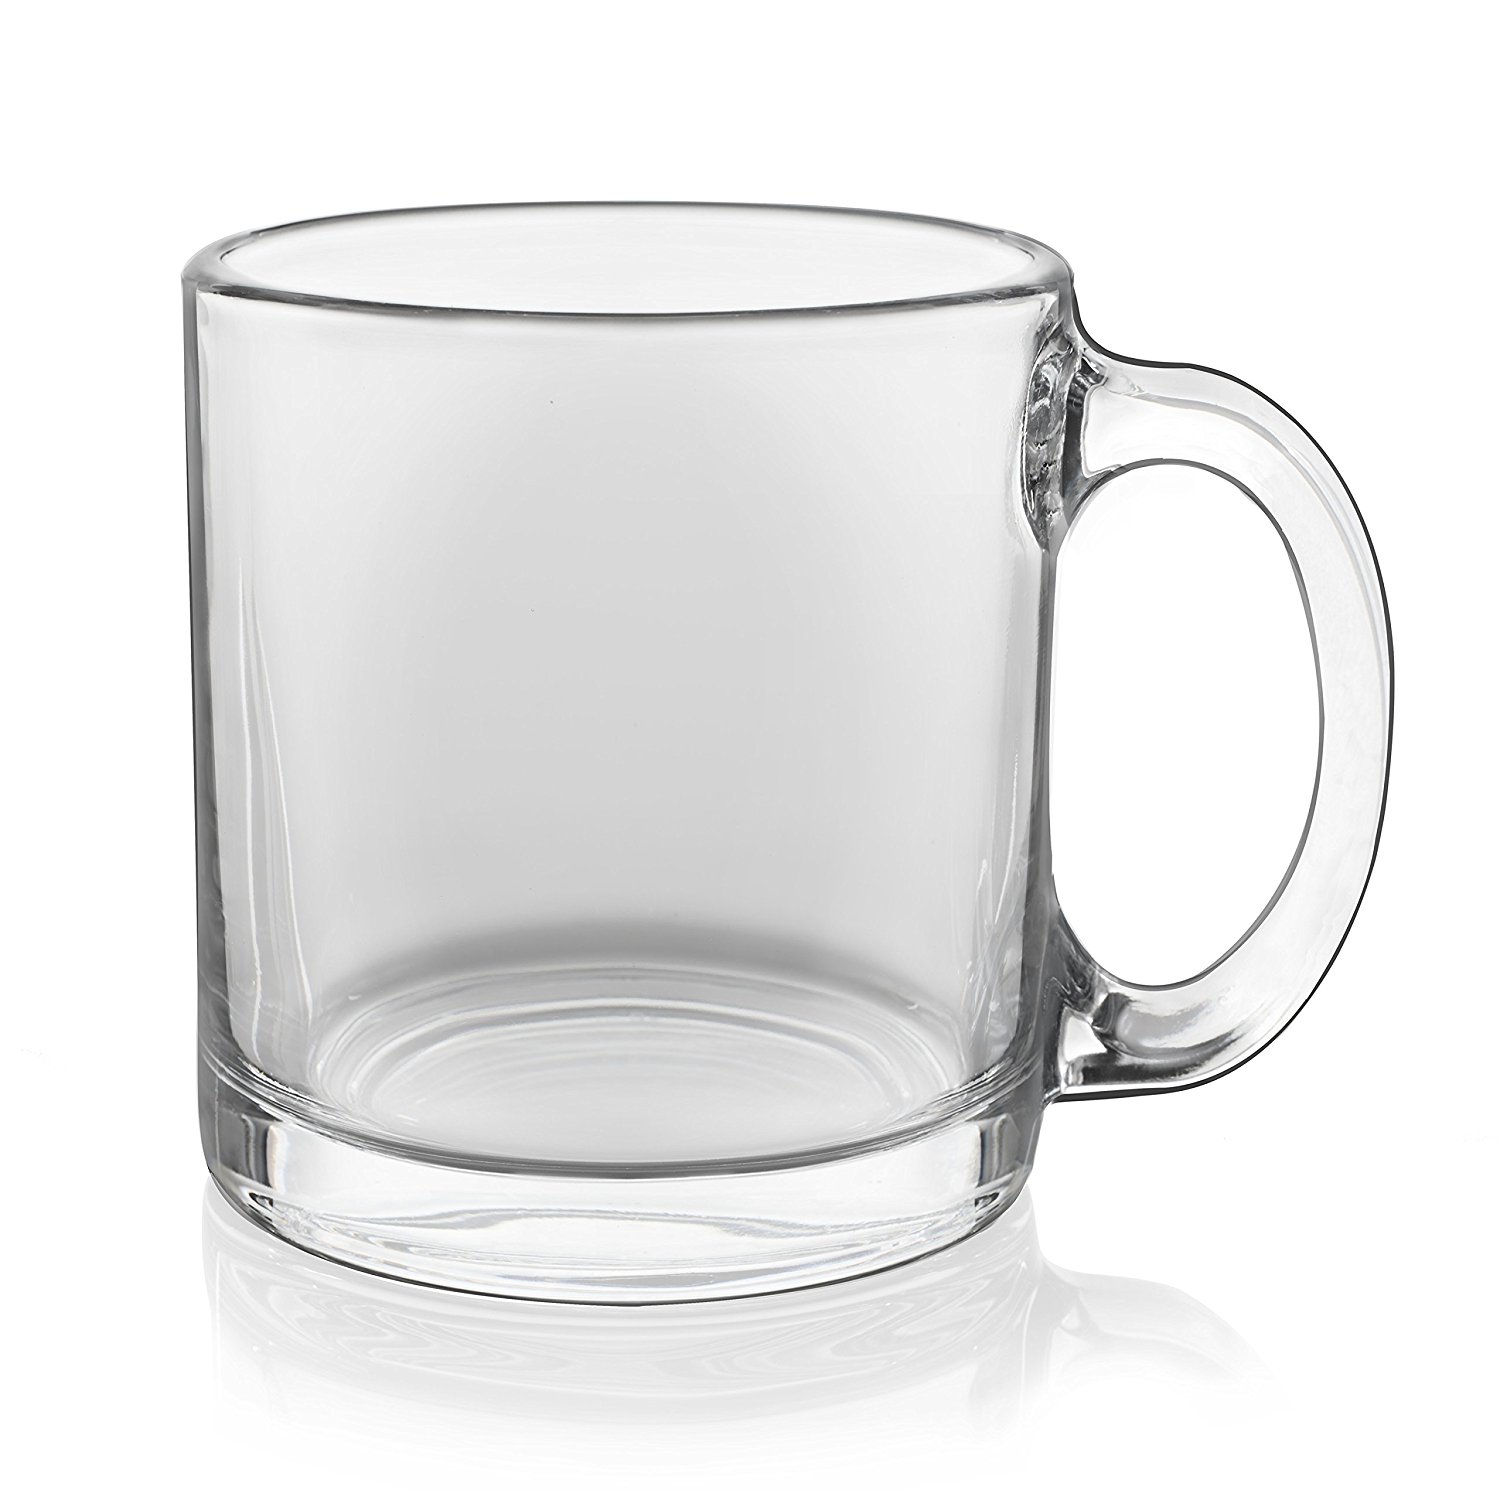 Amazon.com: Libbey 13 oz. Robusta Classic Coffee Mug in Clear, Set ...